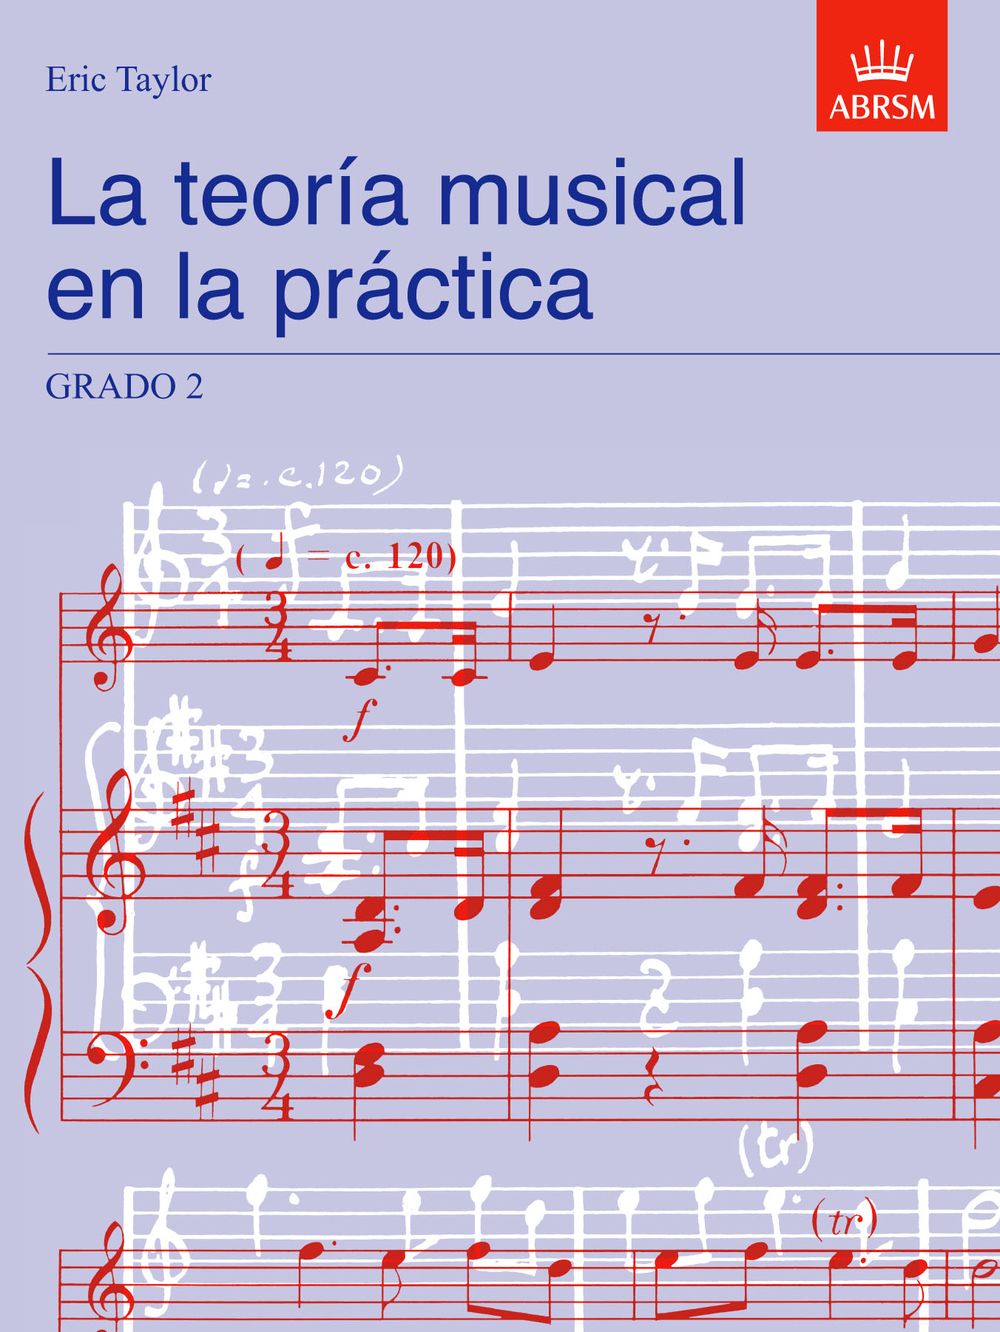 Eric Taylor: La teoria musical en la practica Grado 2: Theory